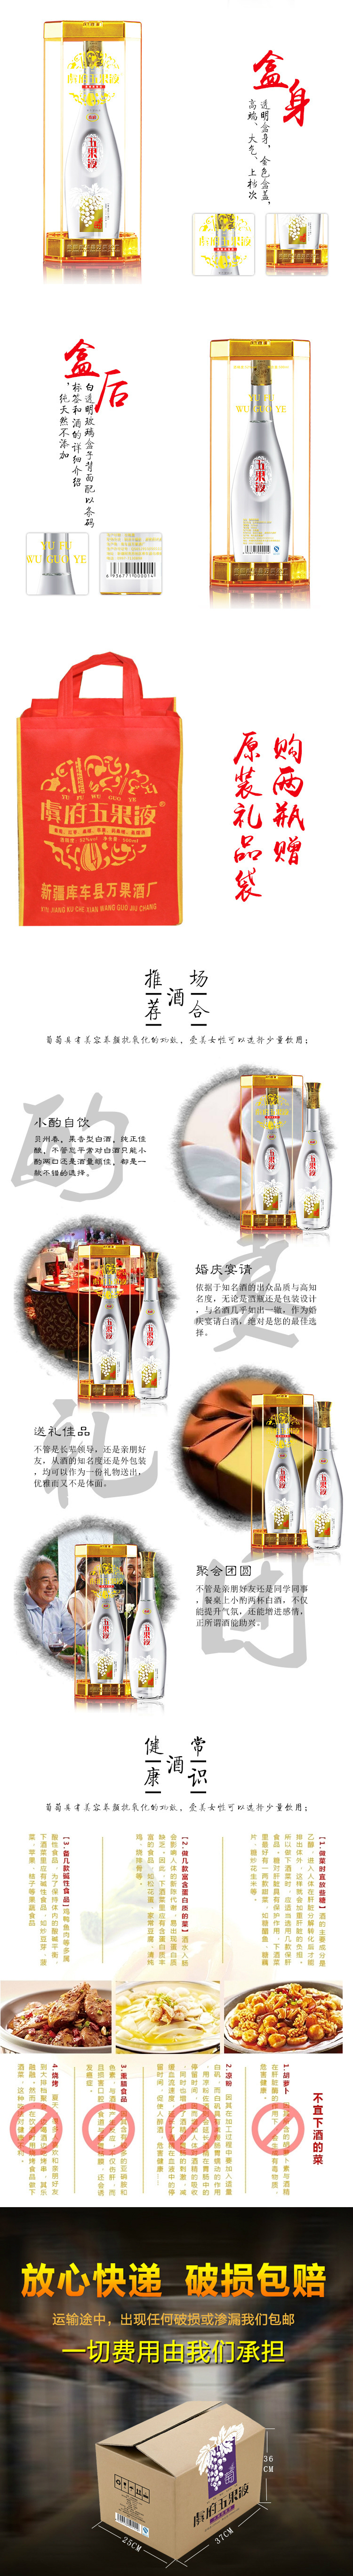 新疆天然水果酒 虞府五果液 葡萄蒸馏酒厂家直销 500ML示例图2